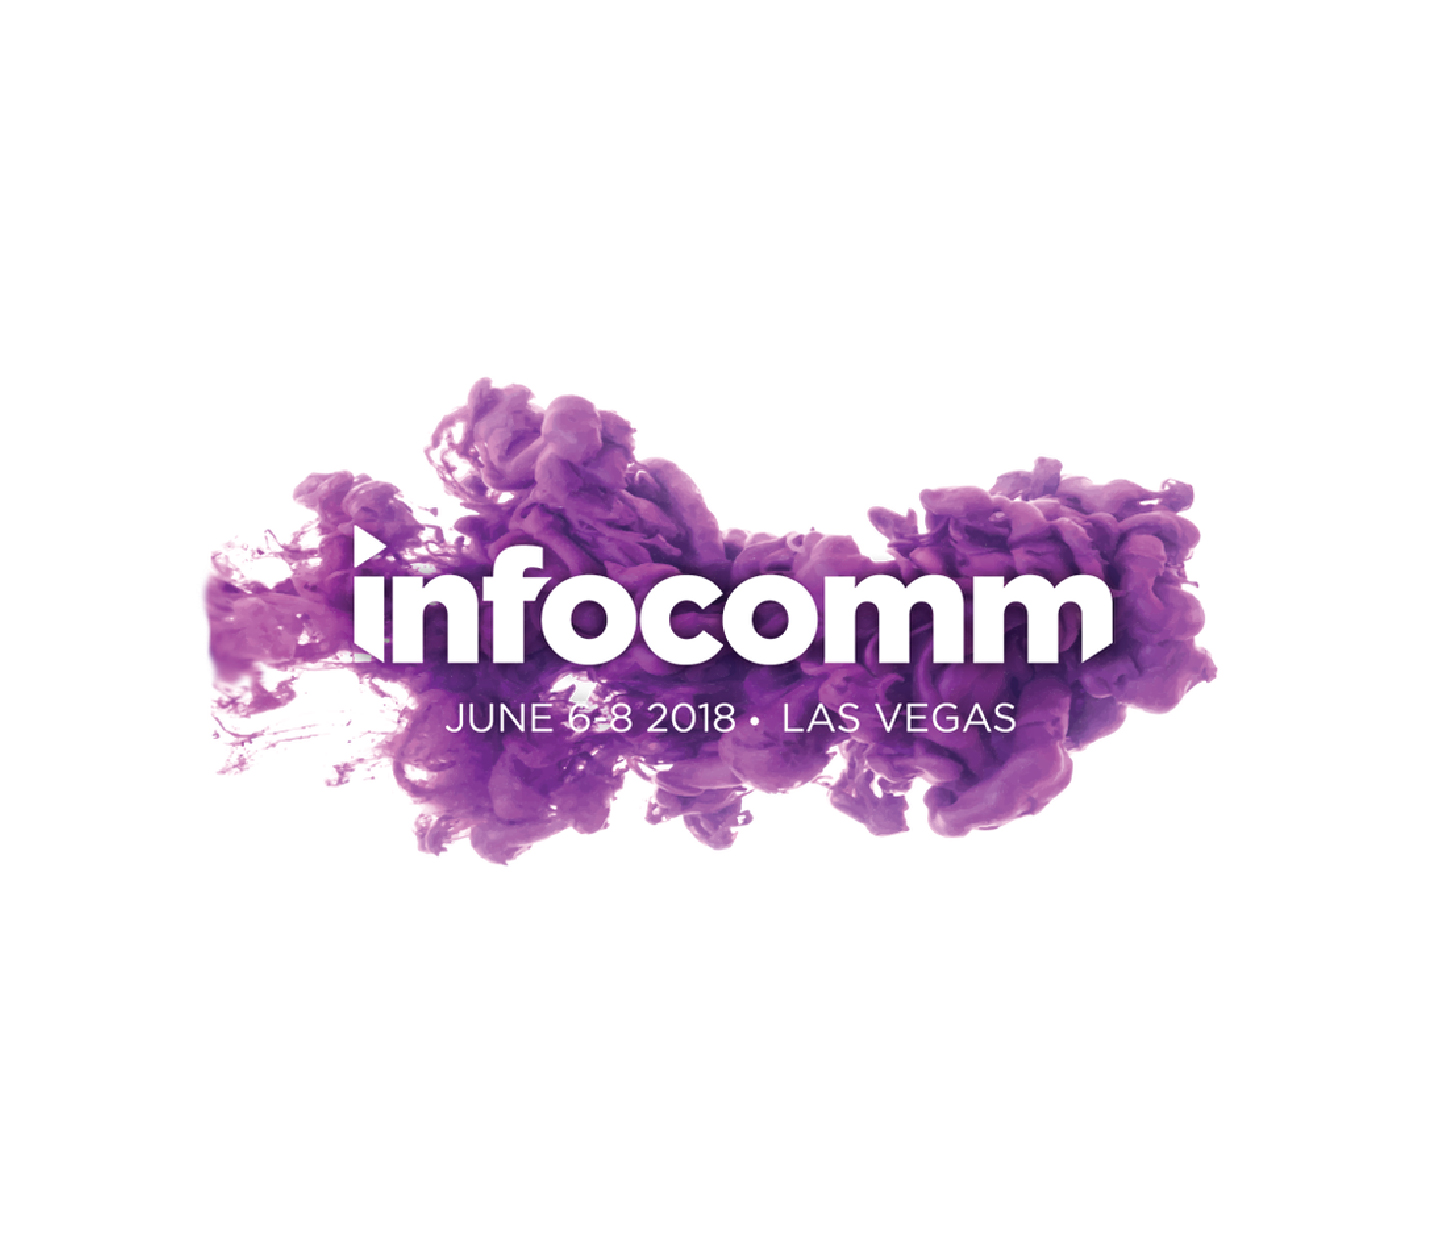 infocomm-1